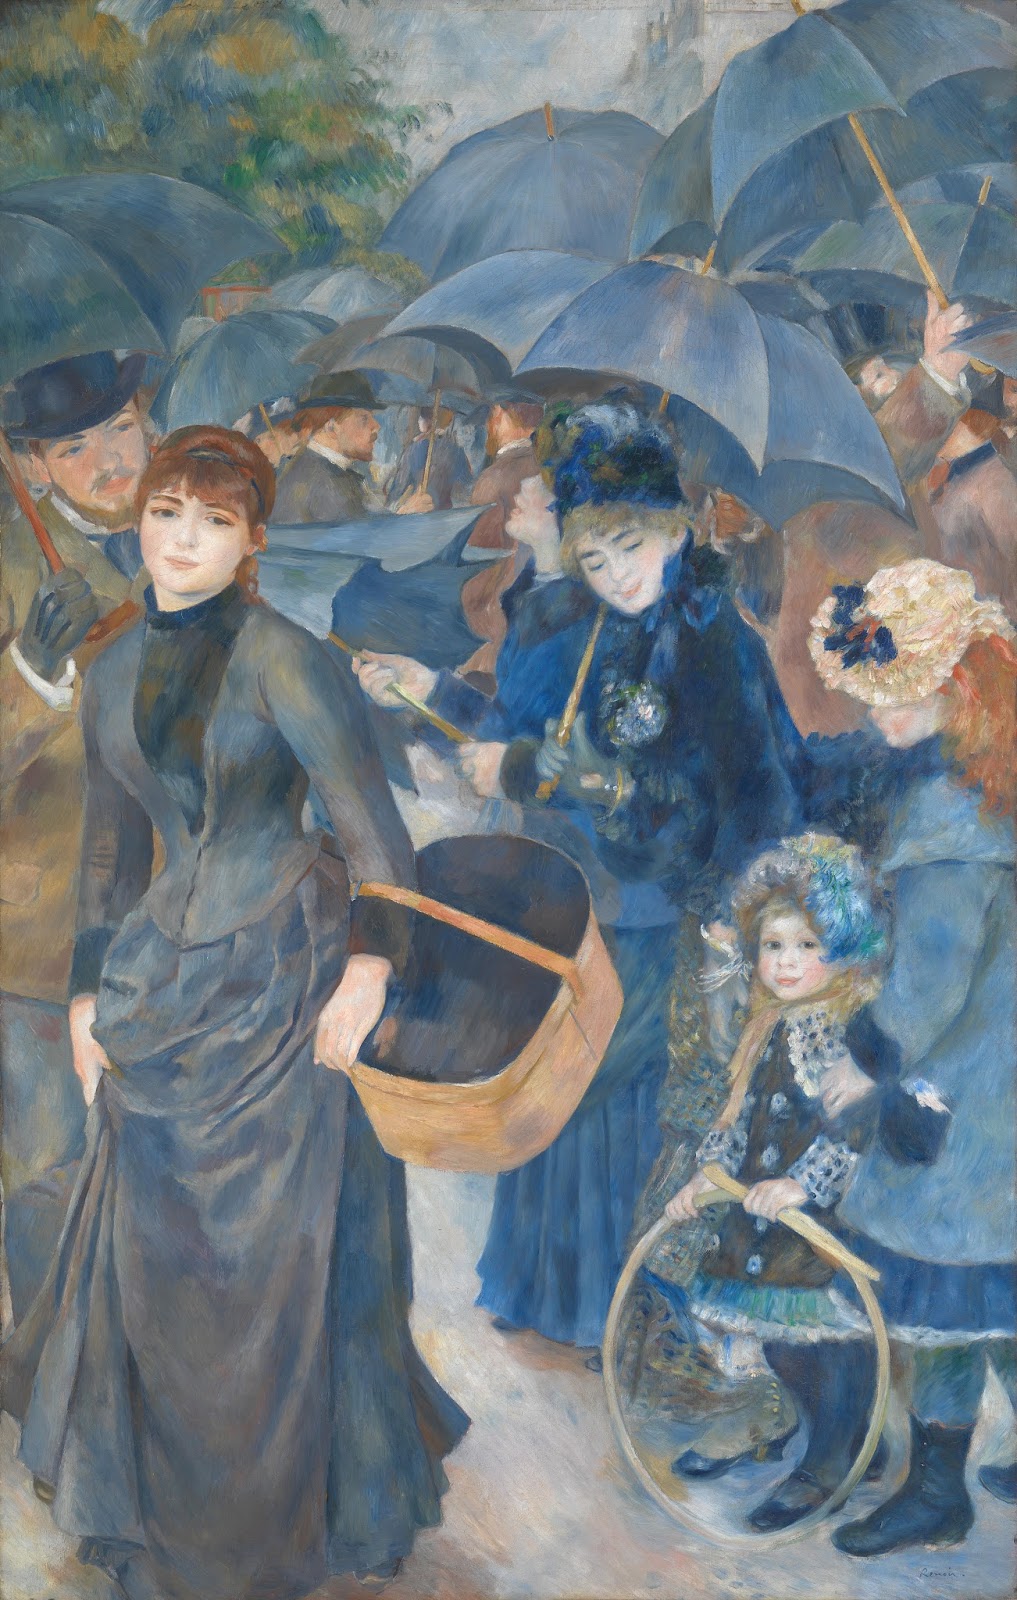 Pierre+Auguste+Renoir-1841-1-19 (718).jpg